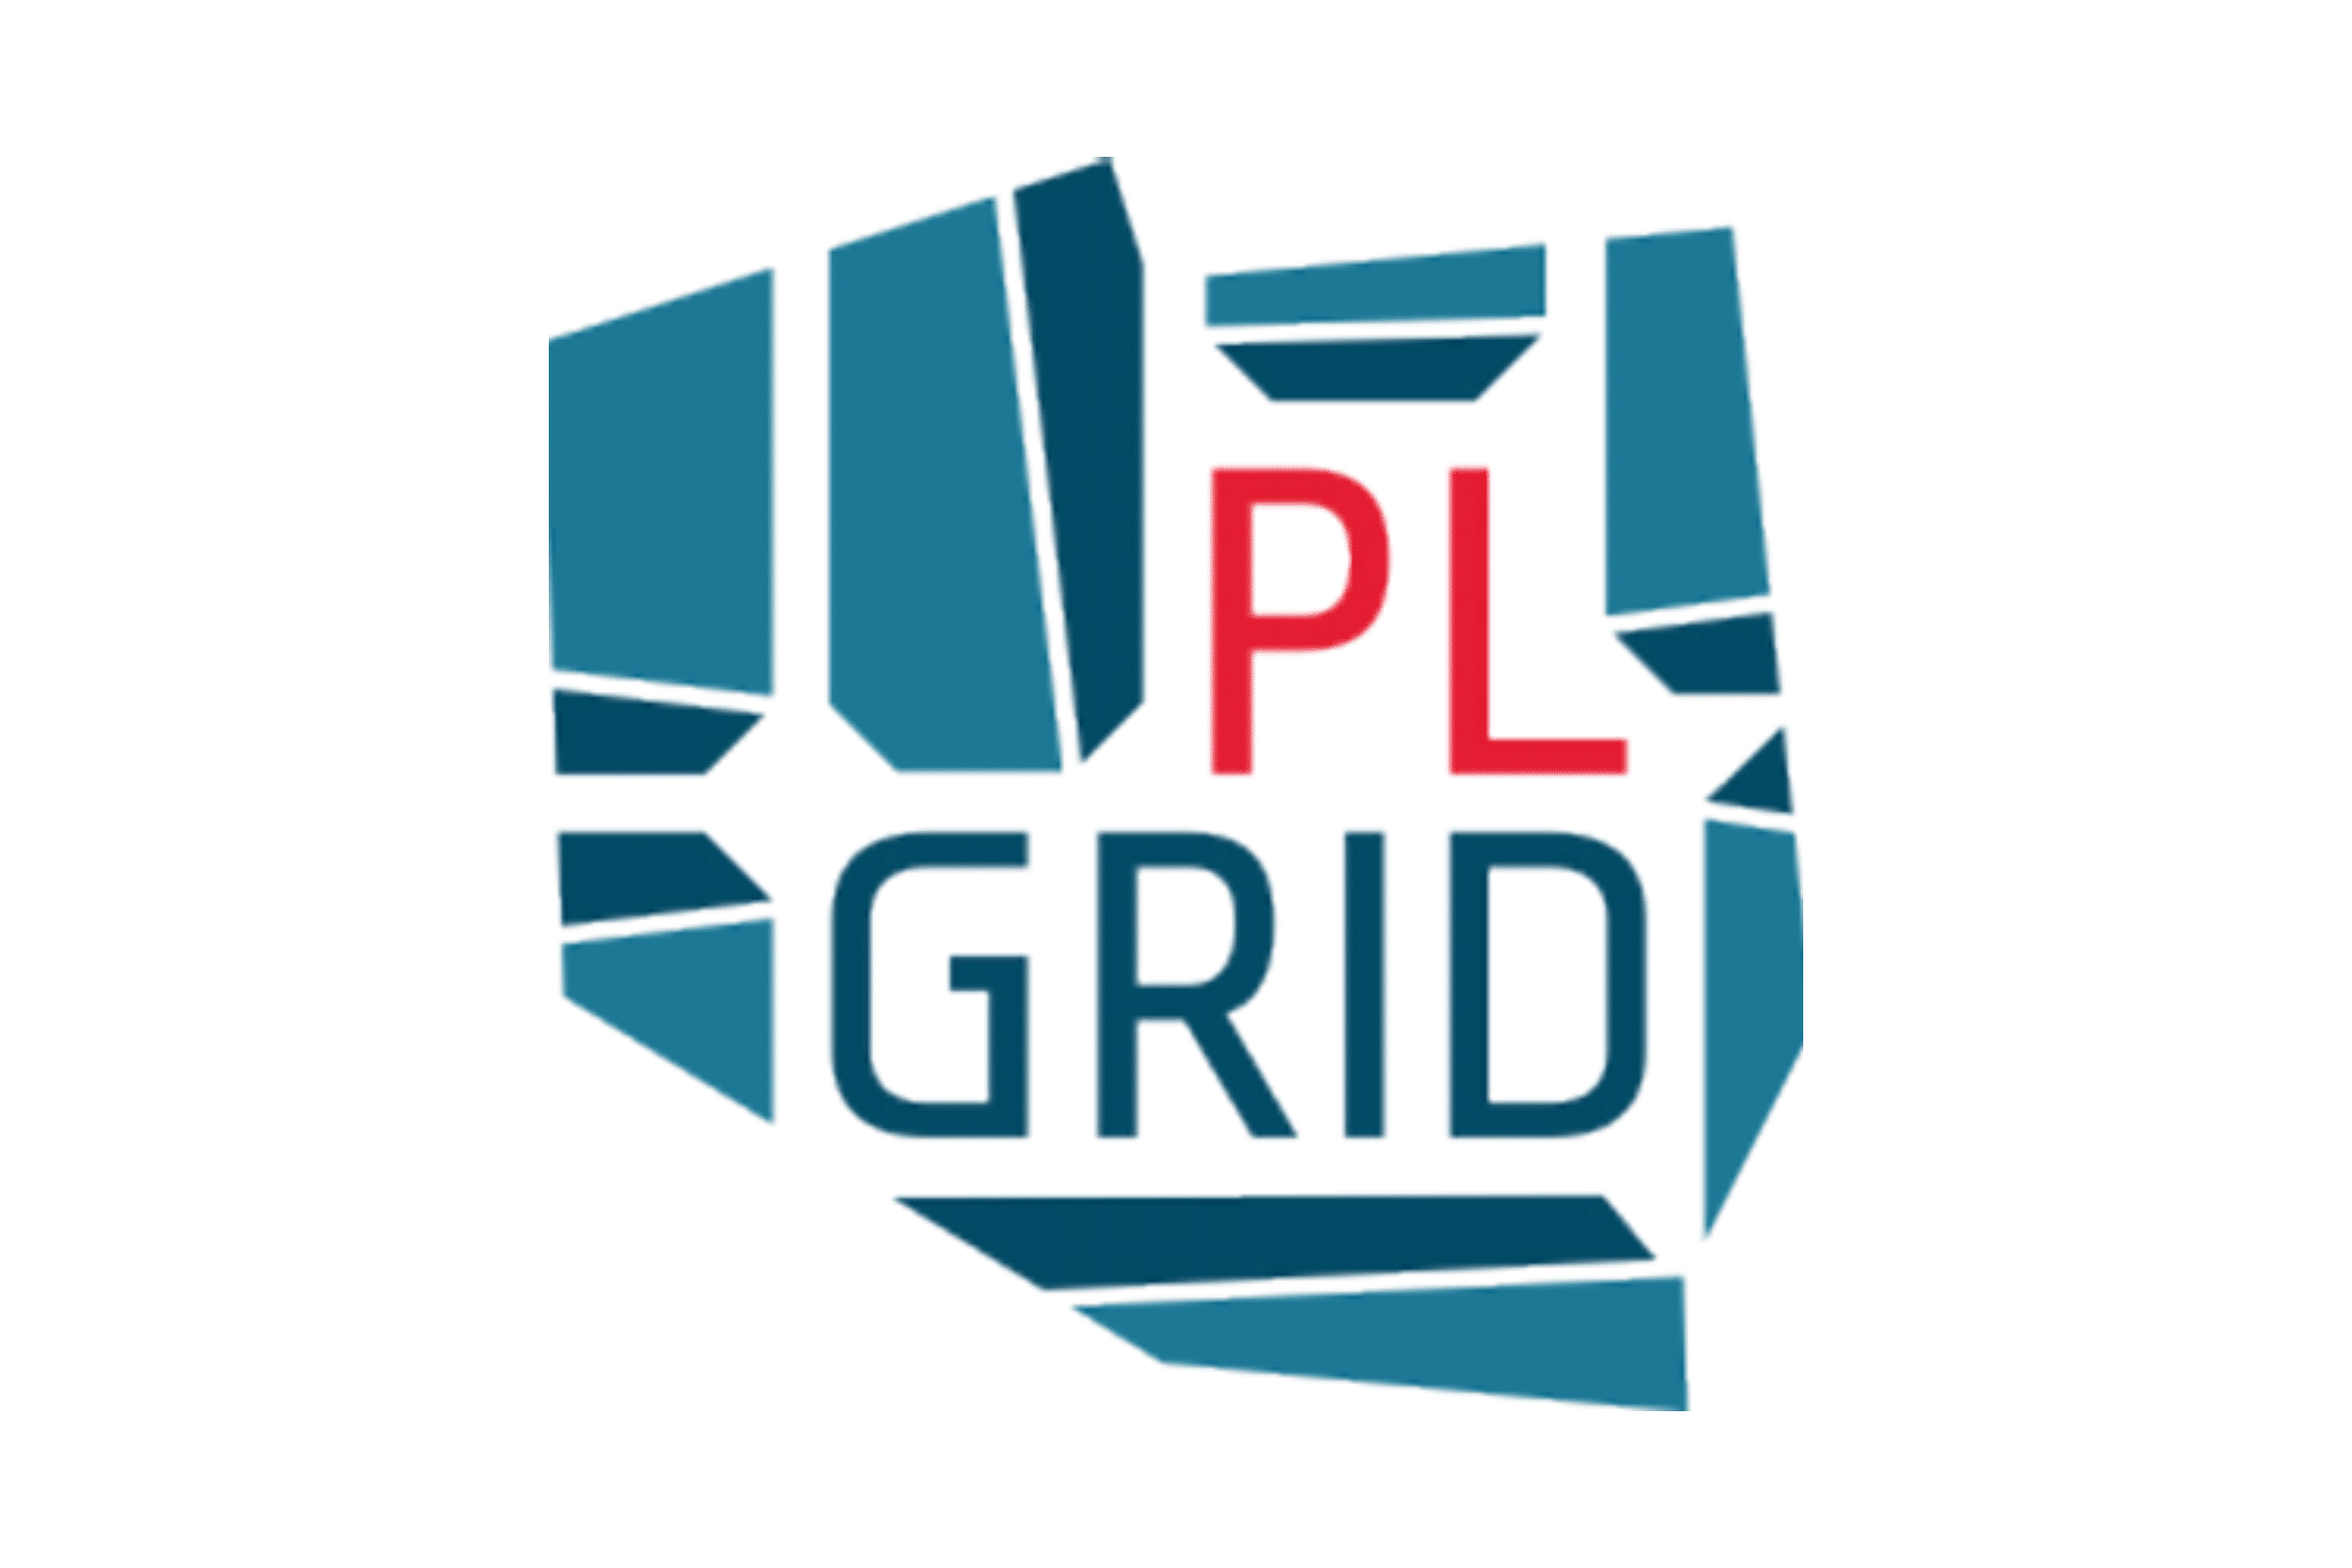 PL GRID logo